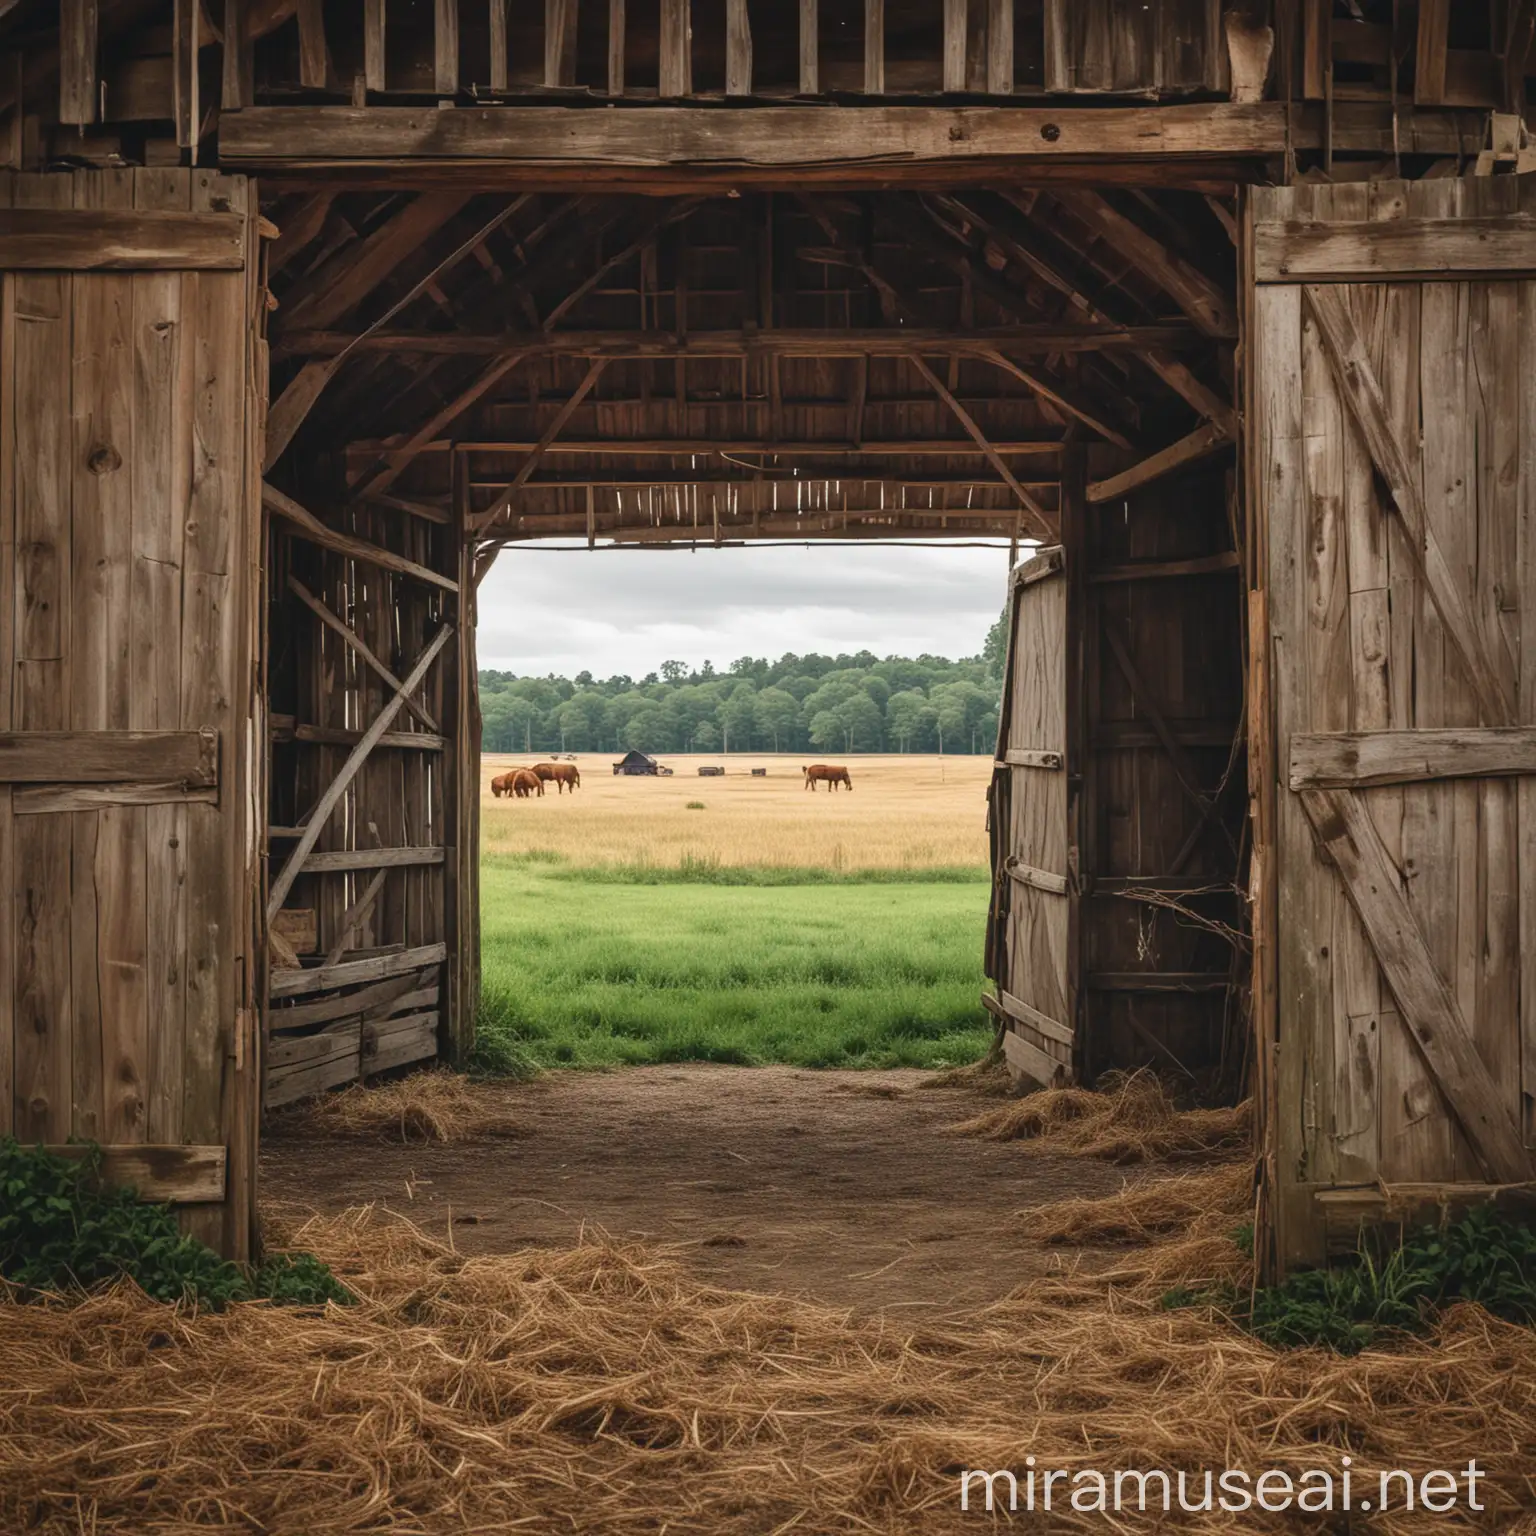 open barn scenery


